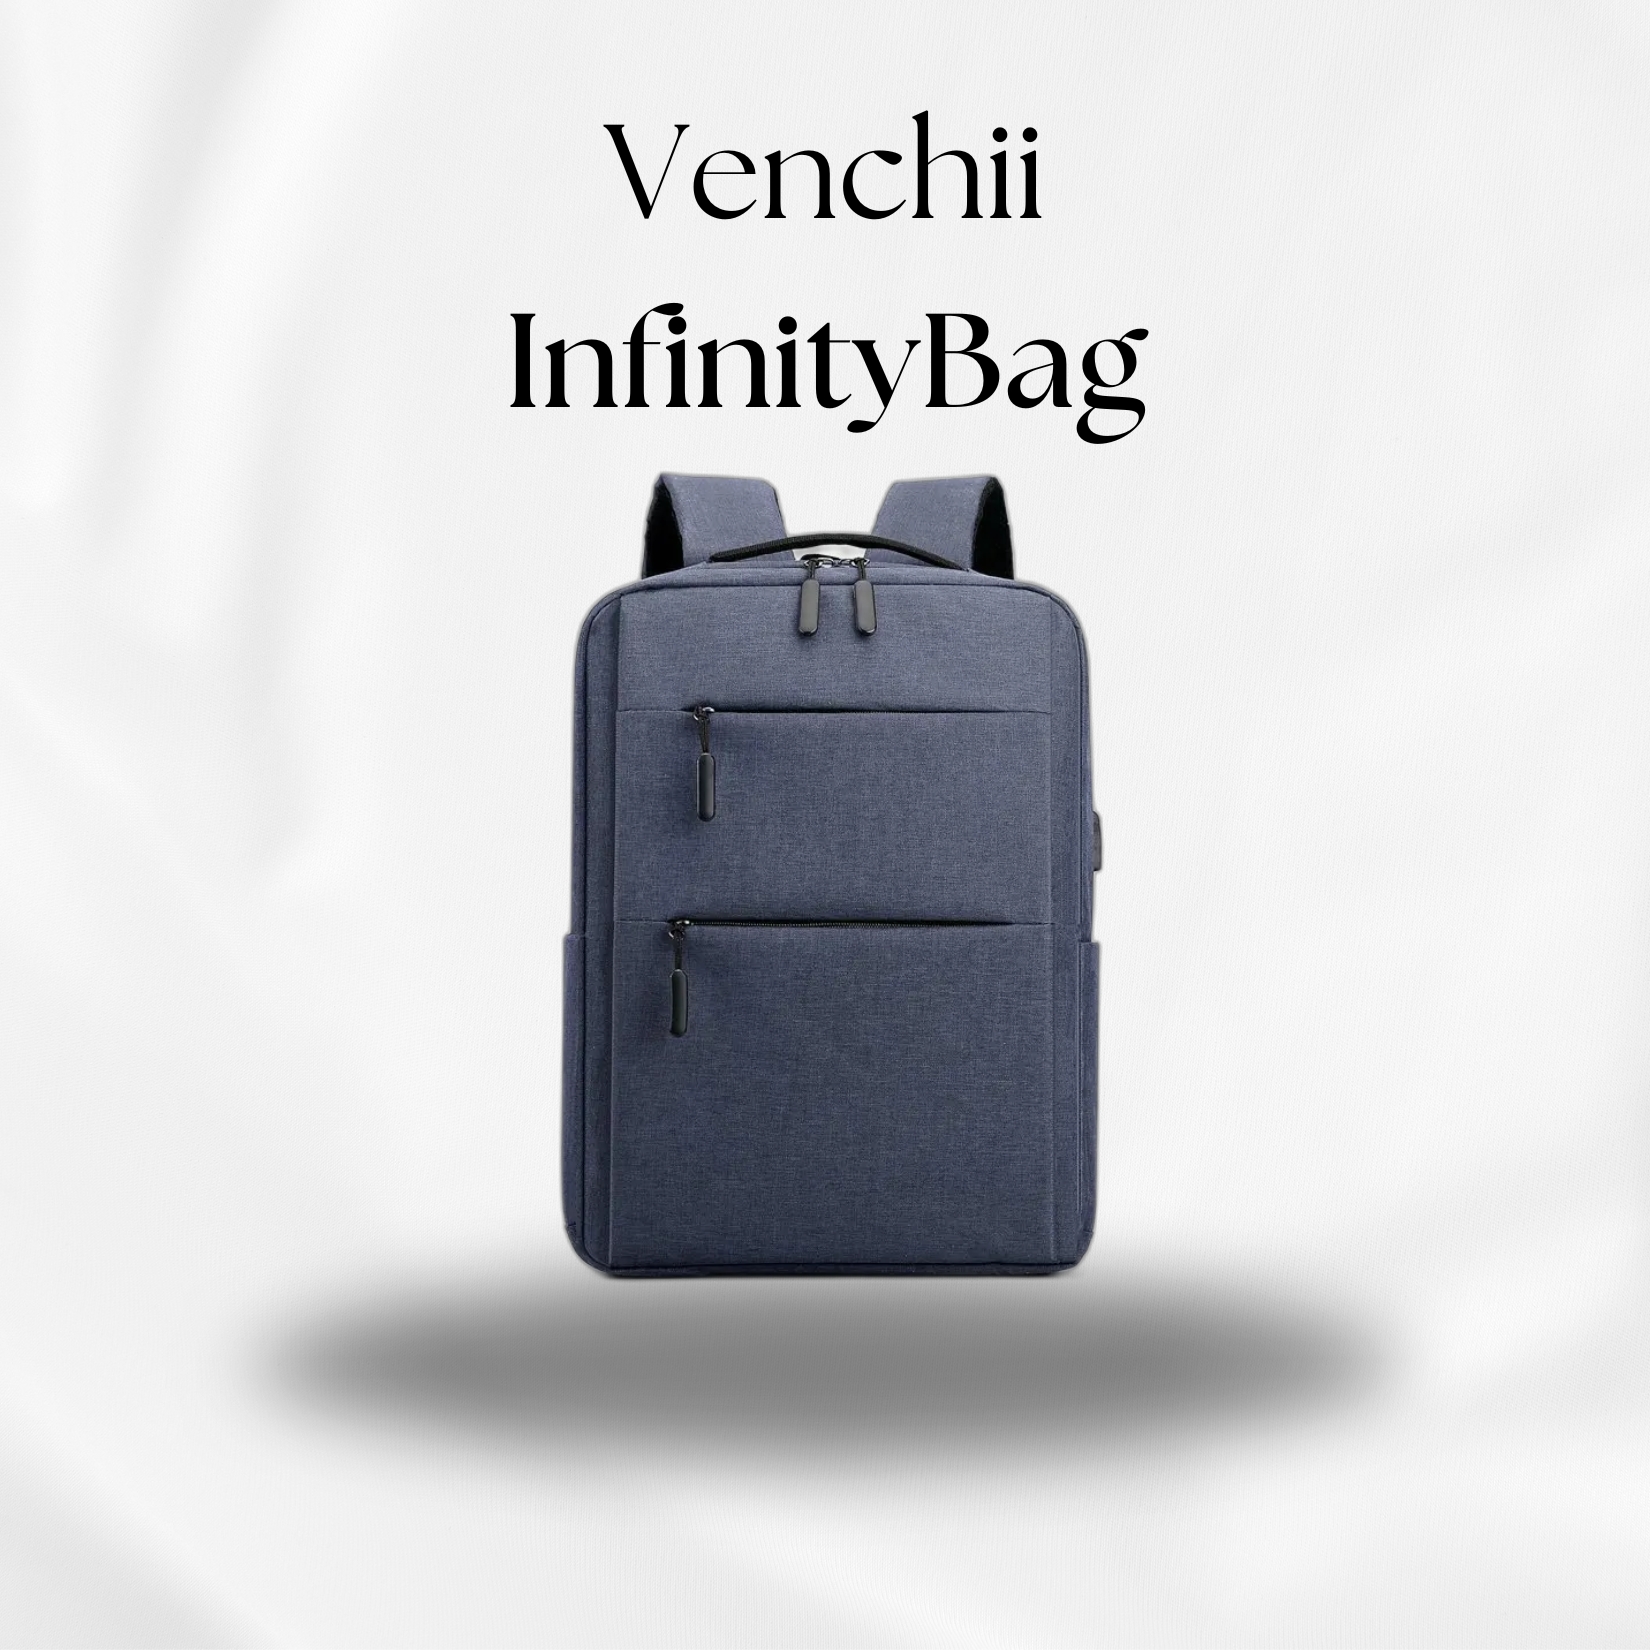 Venchii AirlineBag - Infinity